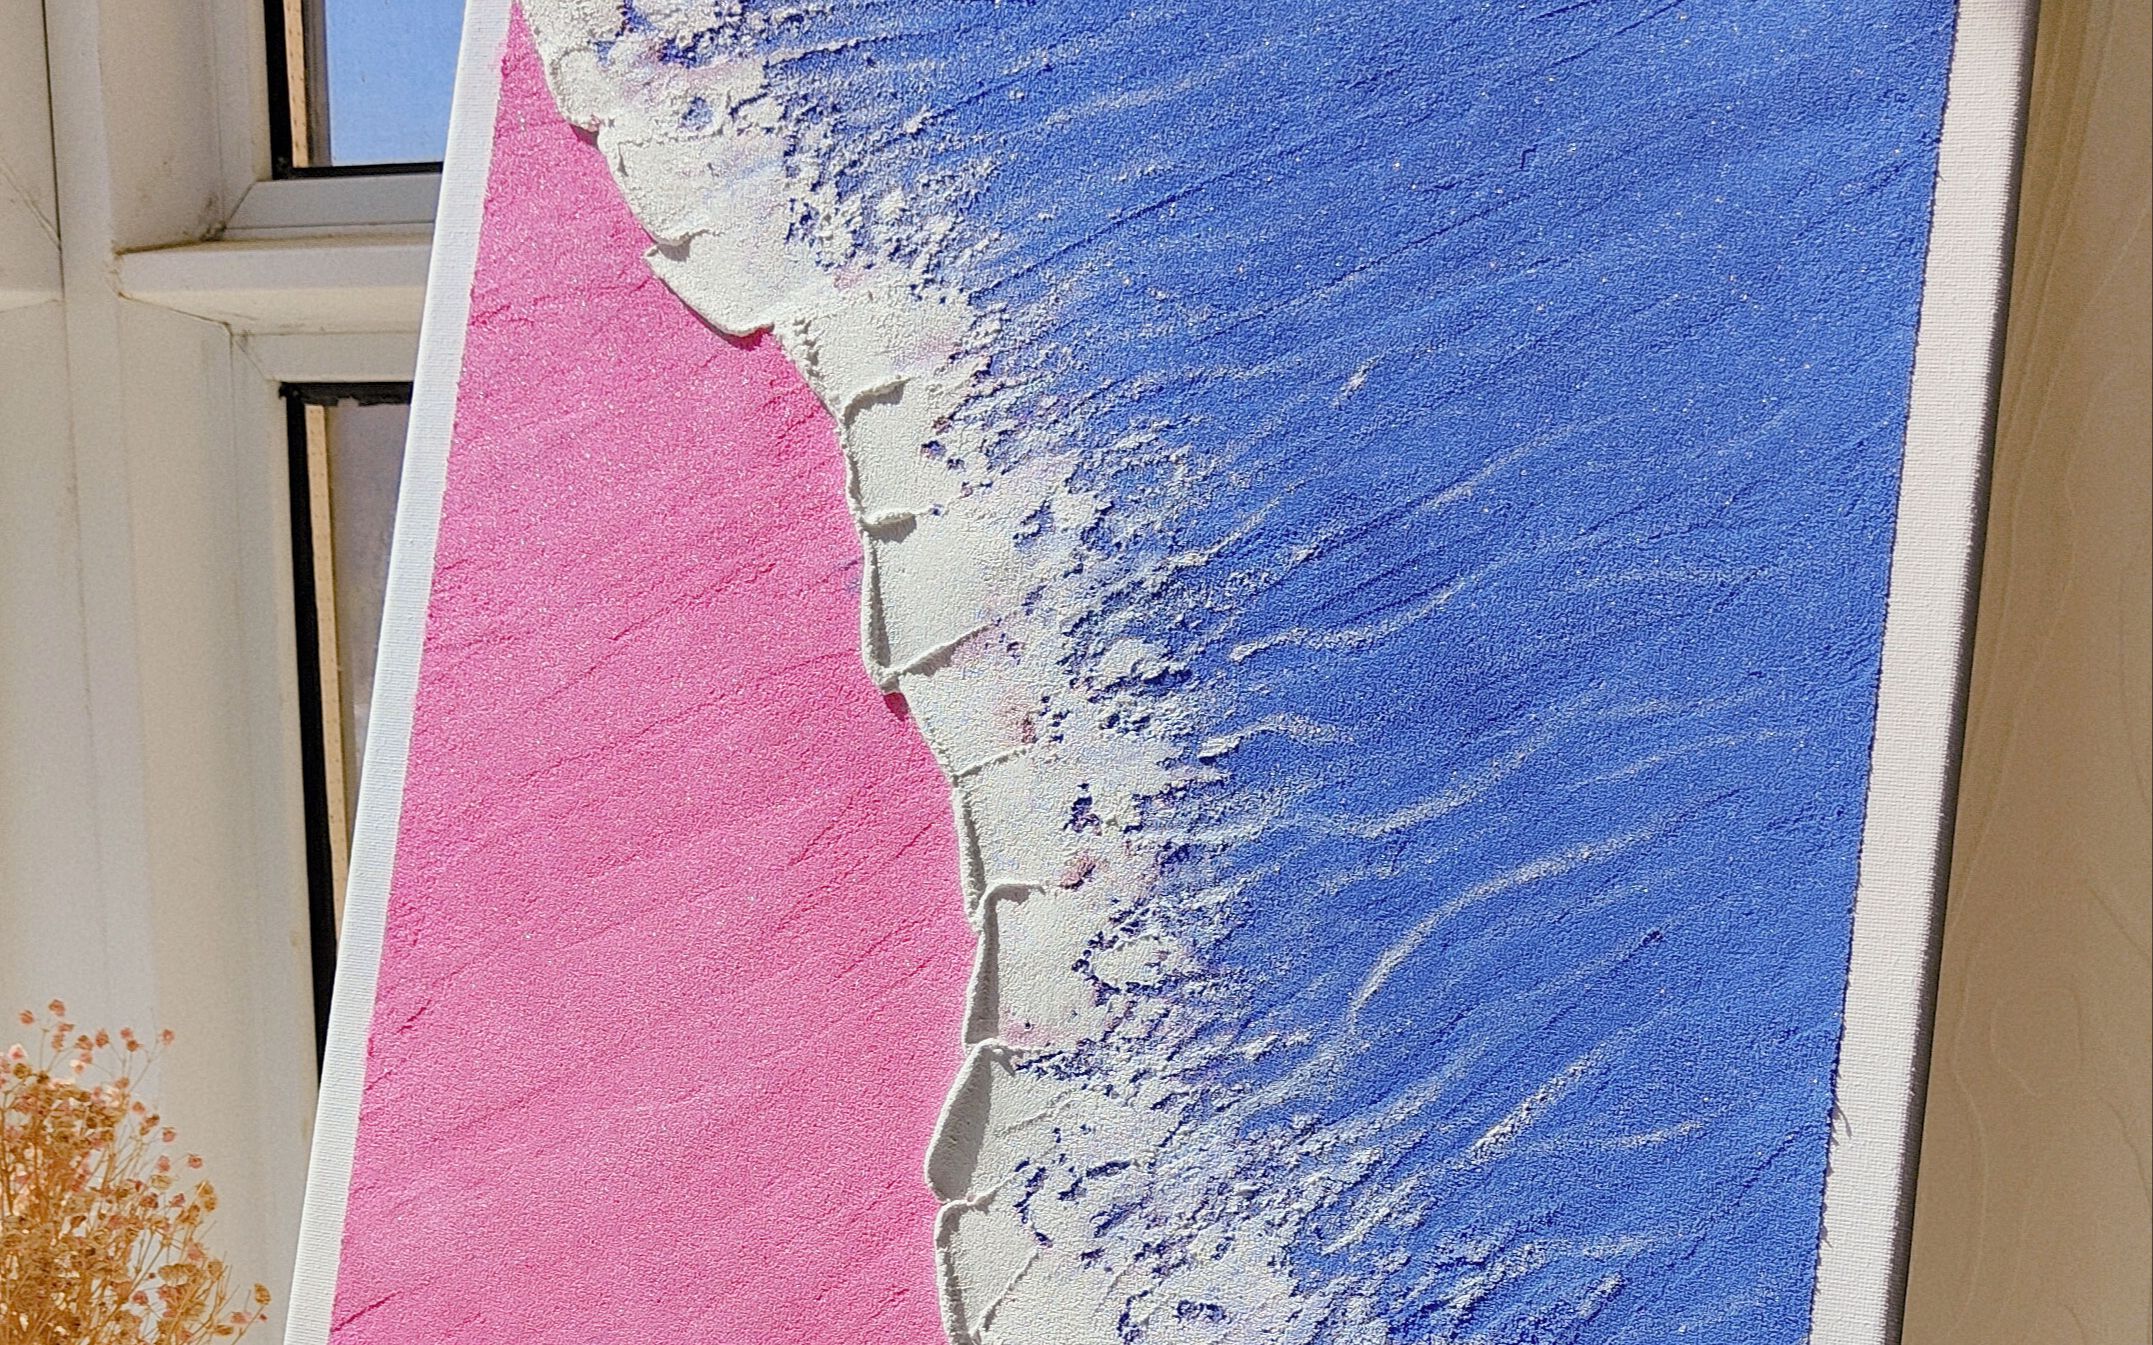 粉蓝色海洋,最喜欢的两种颜色的碰撞,效果还不错哦